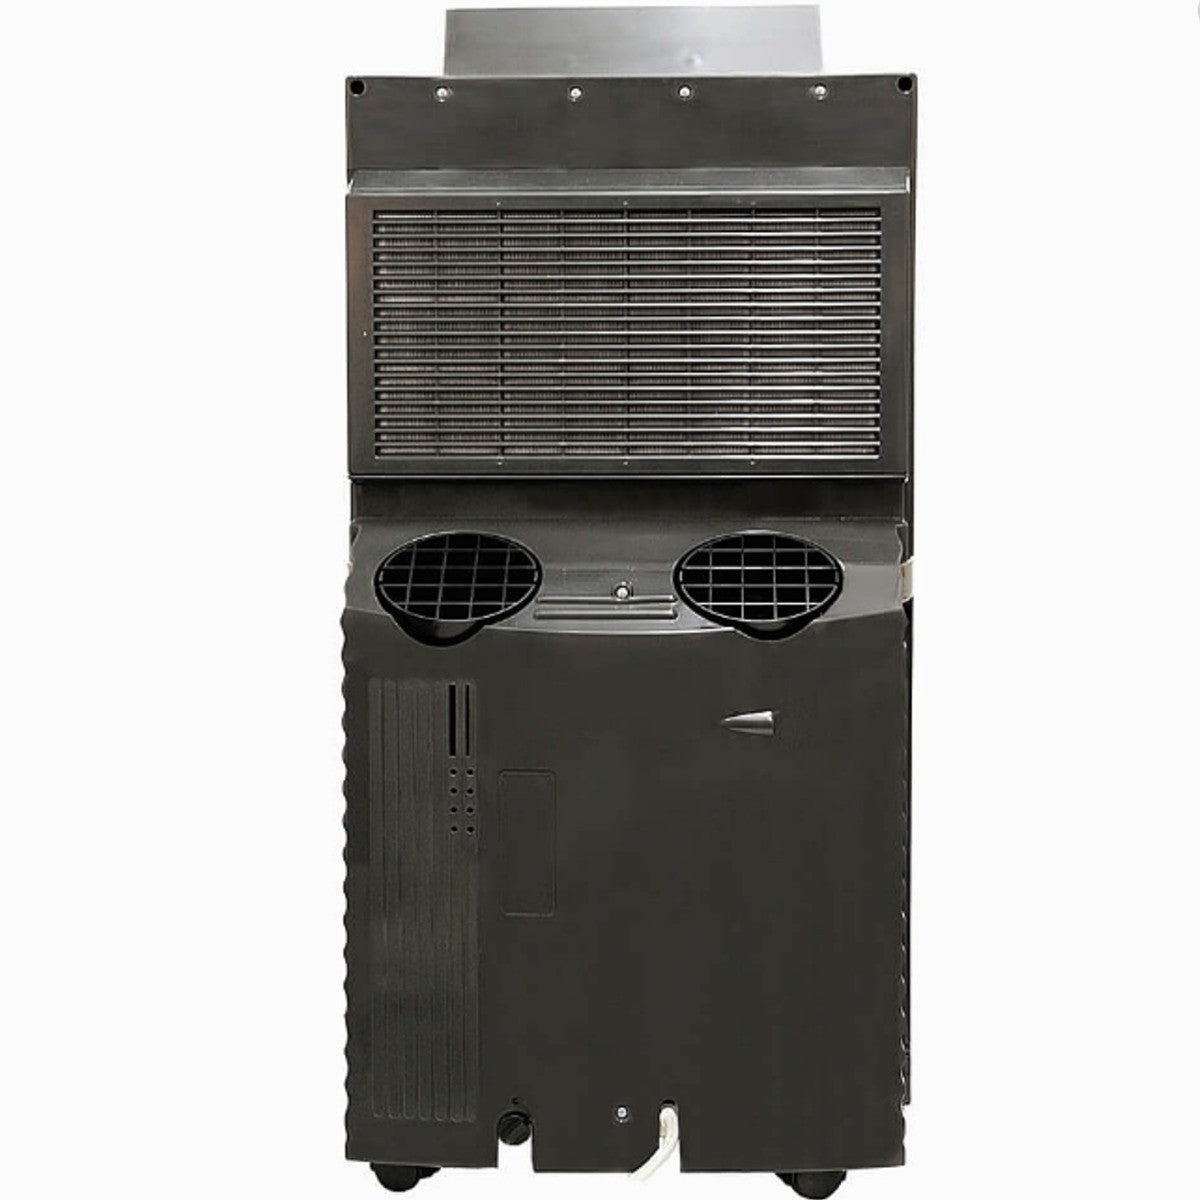 Whynter 14,000 BTU Dual Hose Portable Air Conditioner ARC-143MX